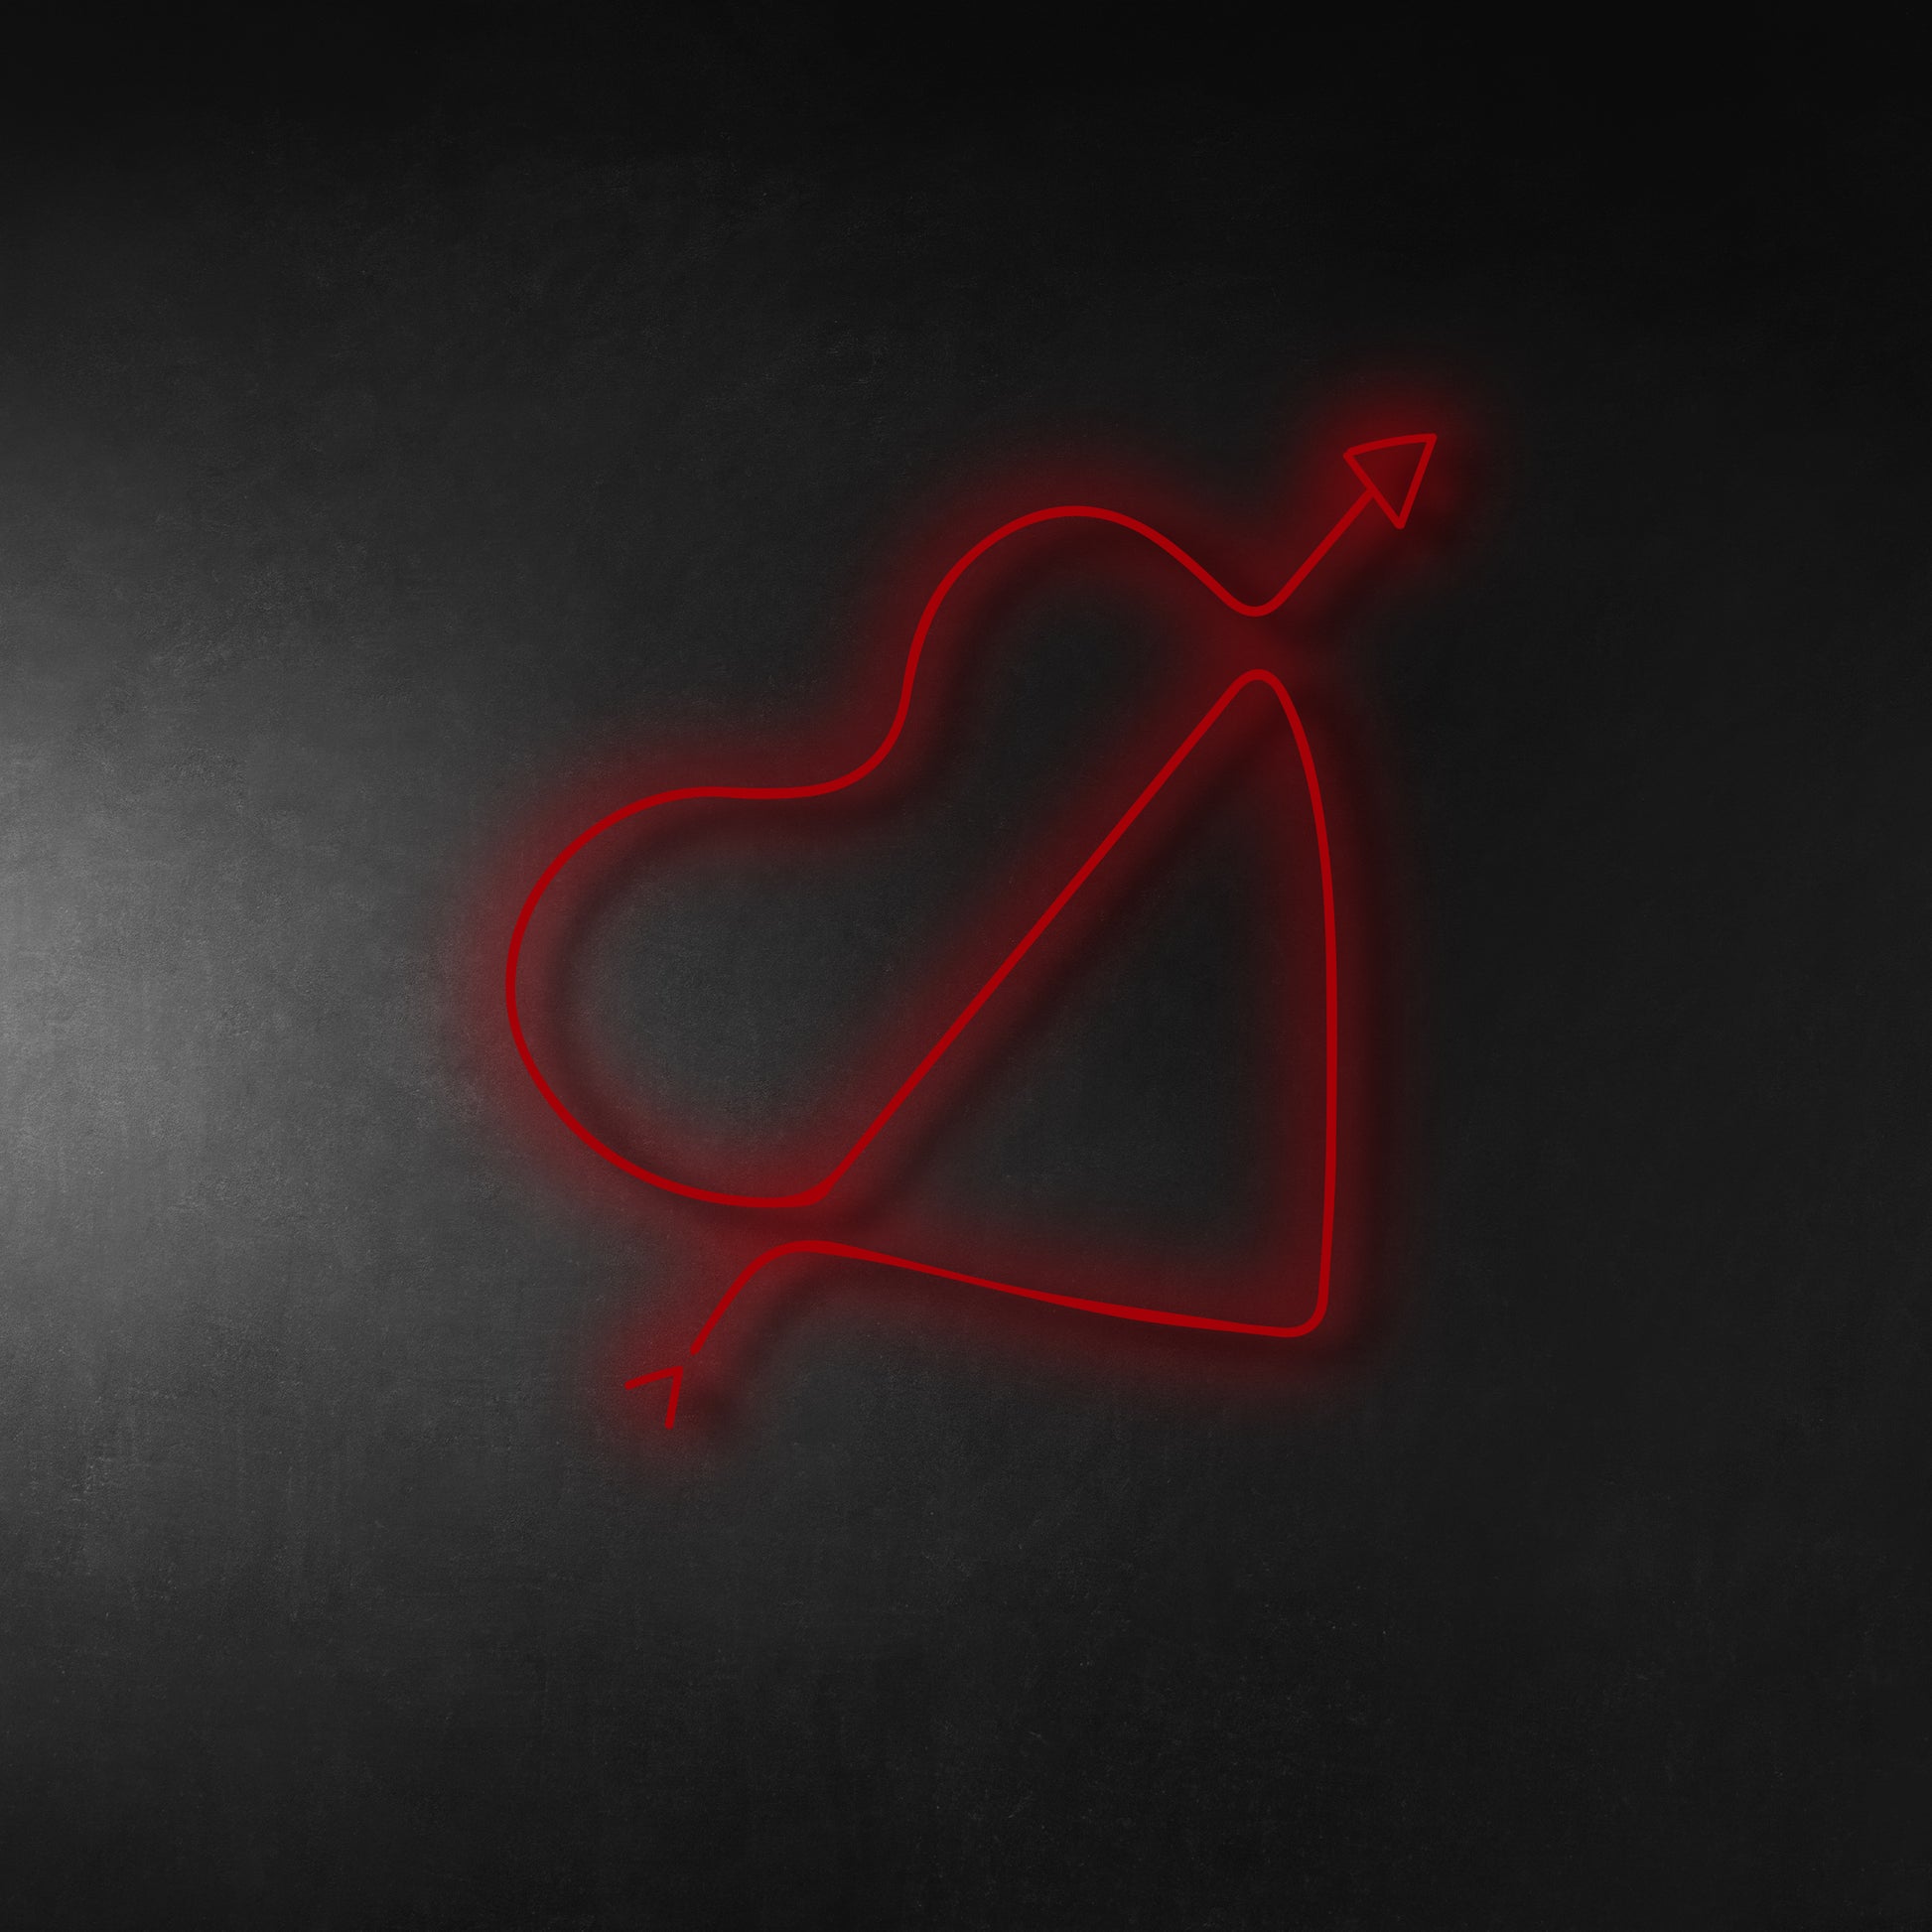 Heart & Arrow LED Neon Sign